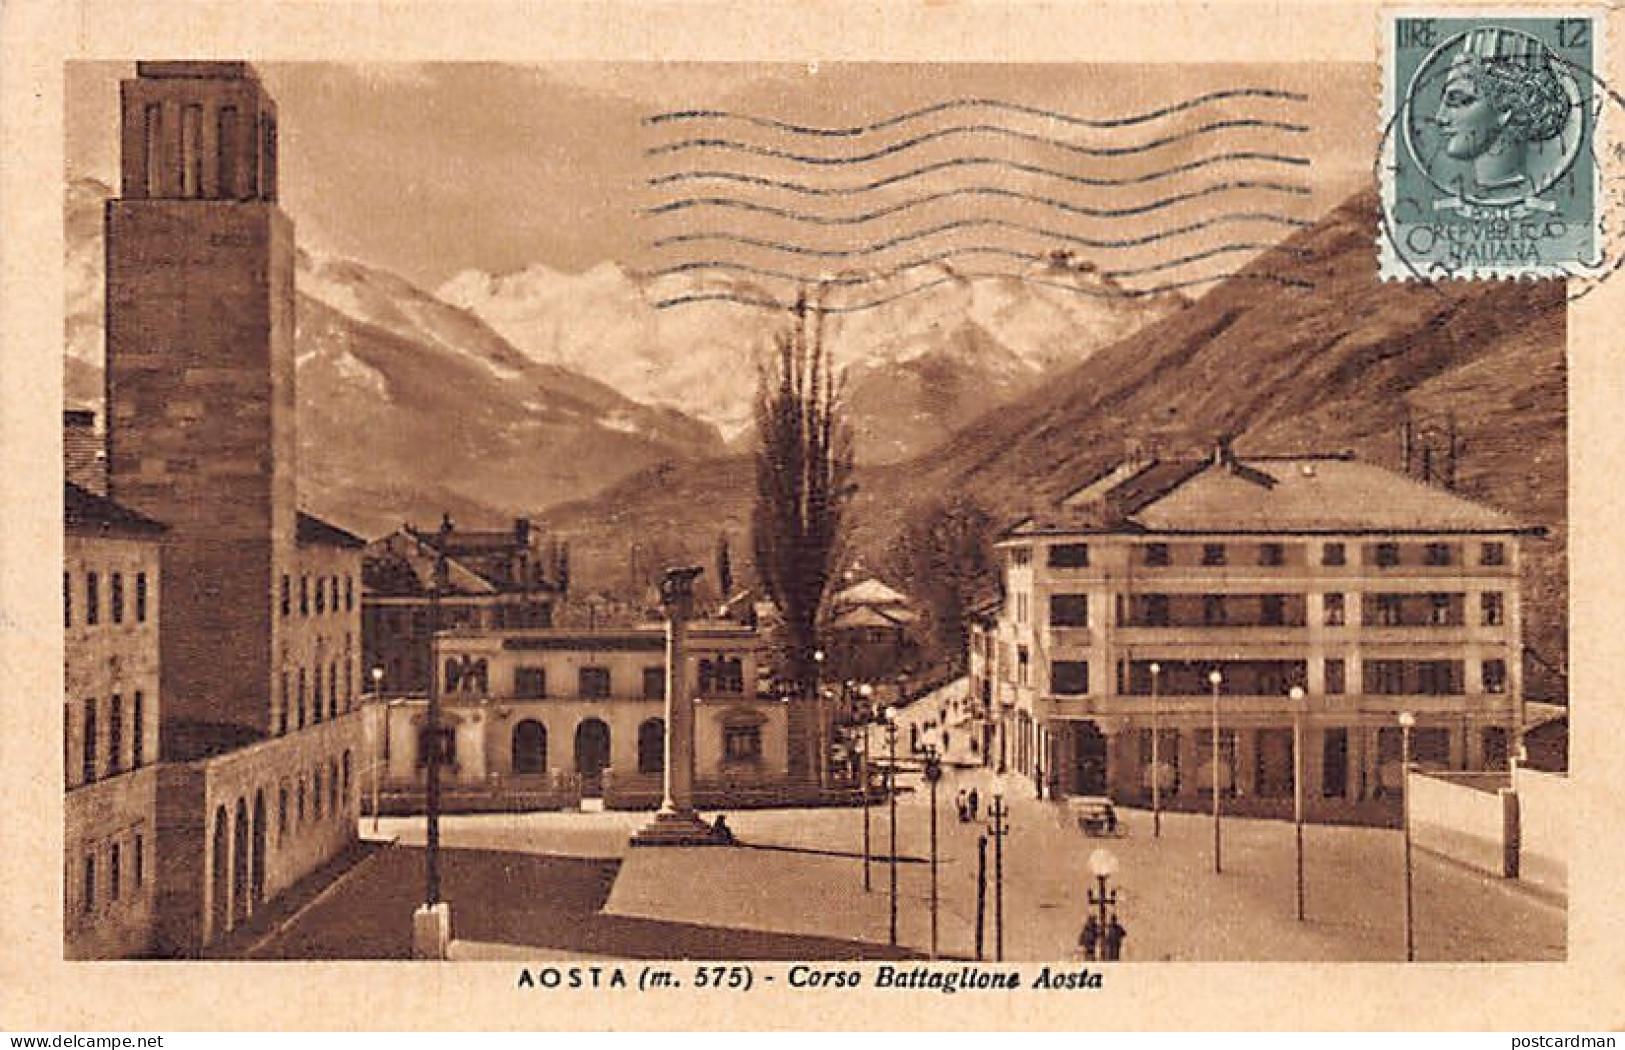 AOSTA - Cosro Battaglione Aosta - Aosta